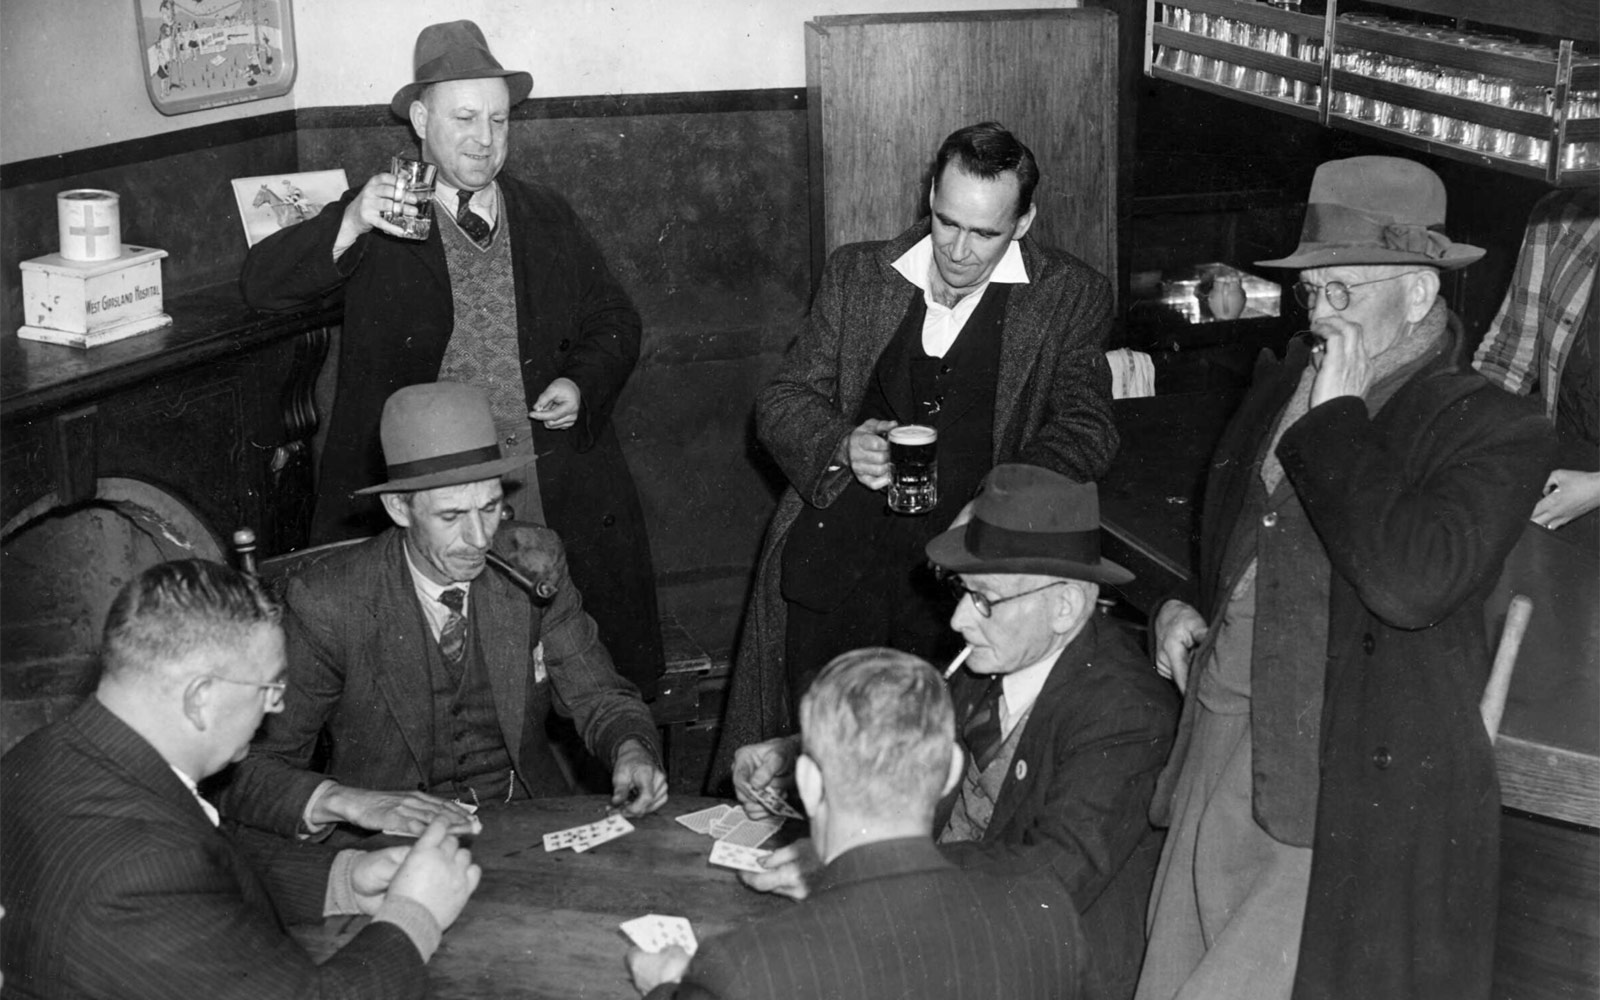 Hombres jugando a cartas. Victoria, Australia, 1944 | Jim Fitzpatrick. National Library of Australia | Sin restricciones conocidas de derechos de autor